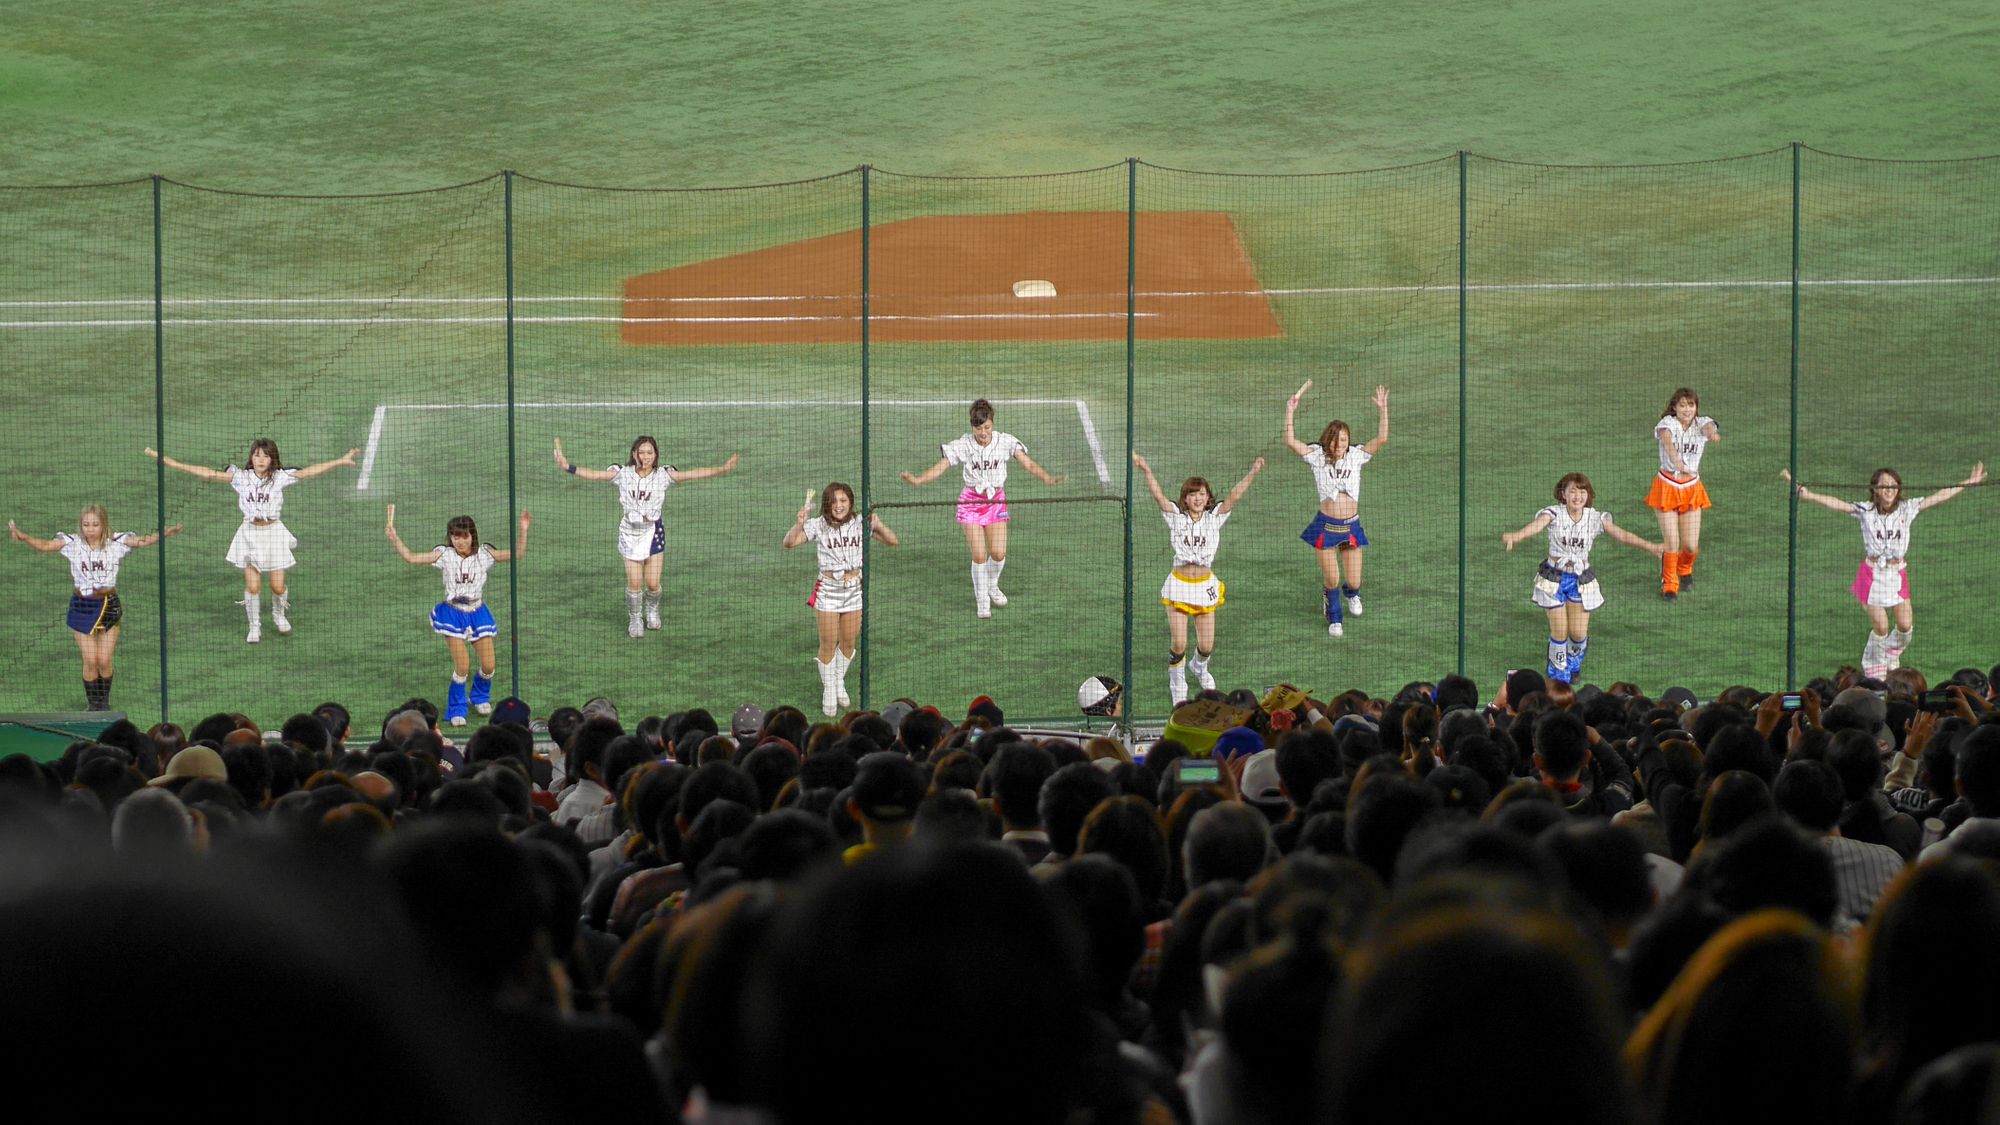 Baseball at Tokyo Dome